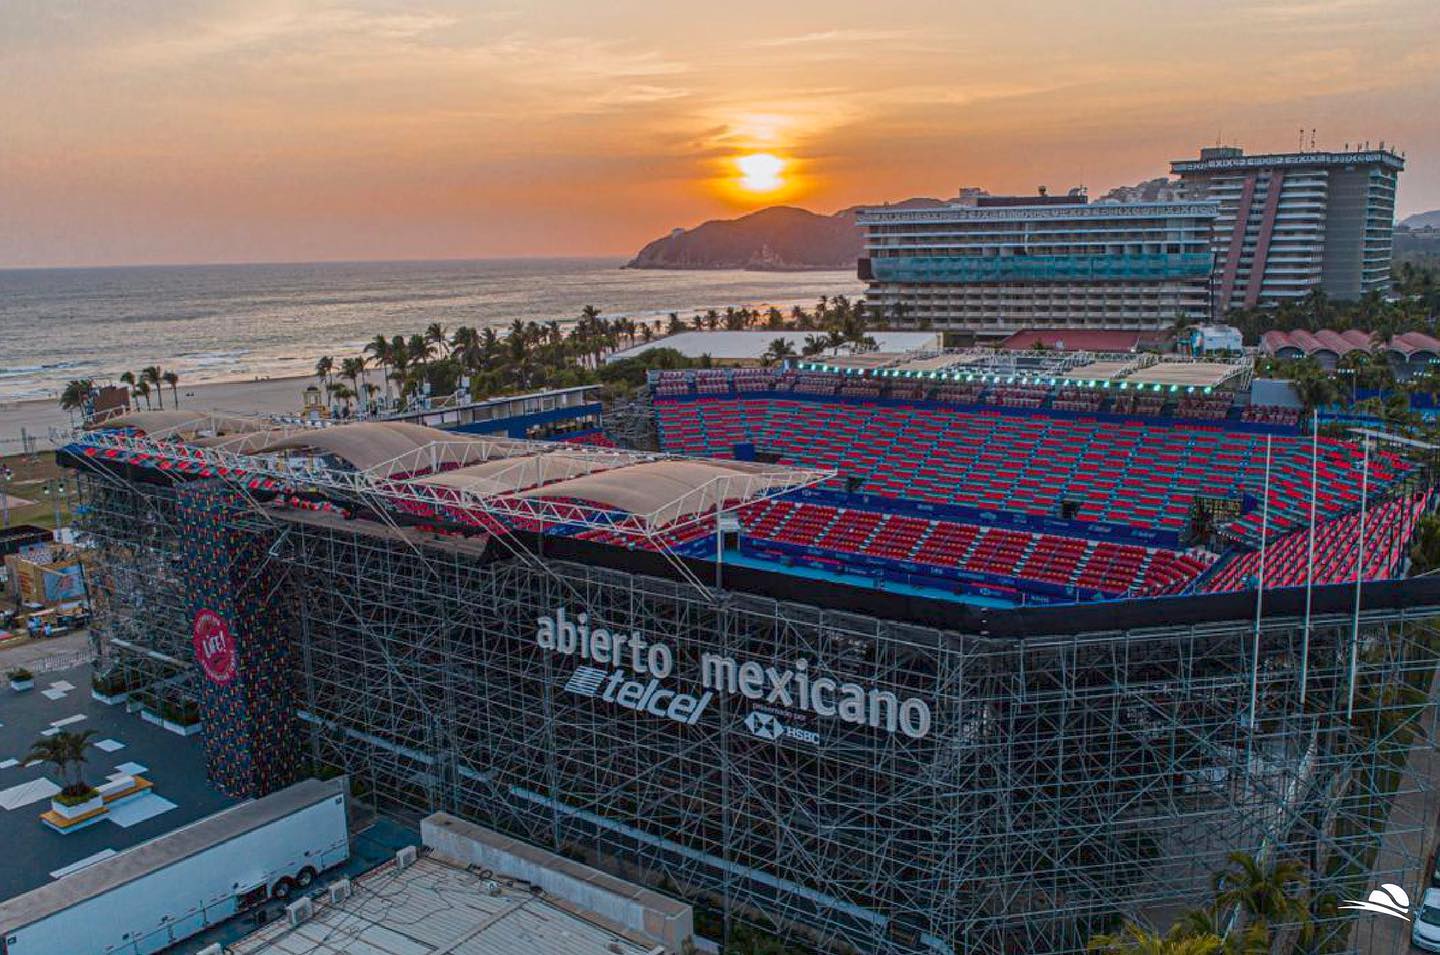 Abierto Mexicano de Tenis revisa sedes alternas a Acapulco para 2024